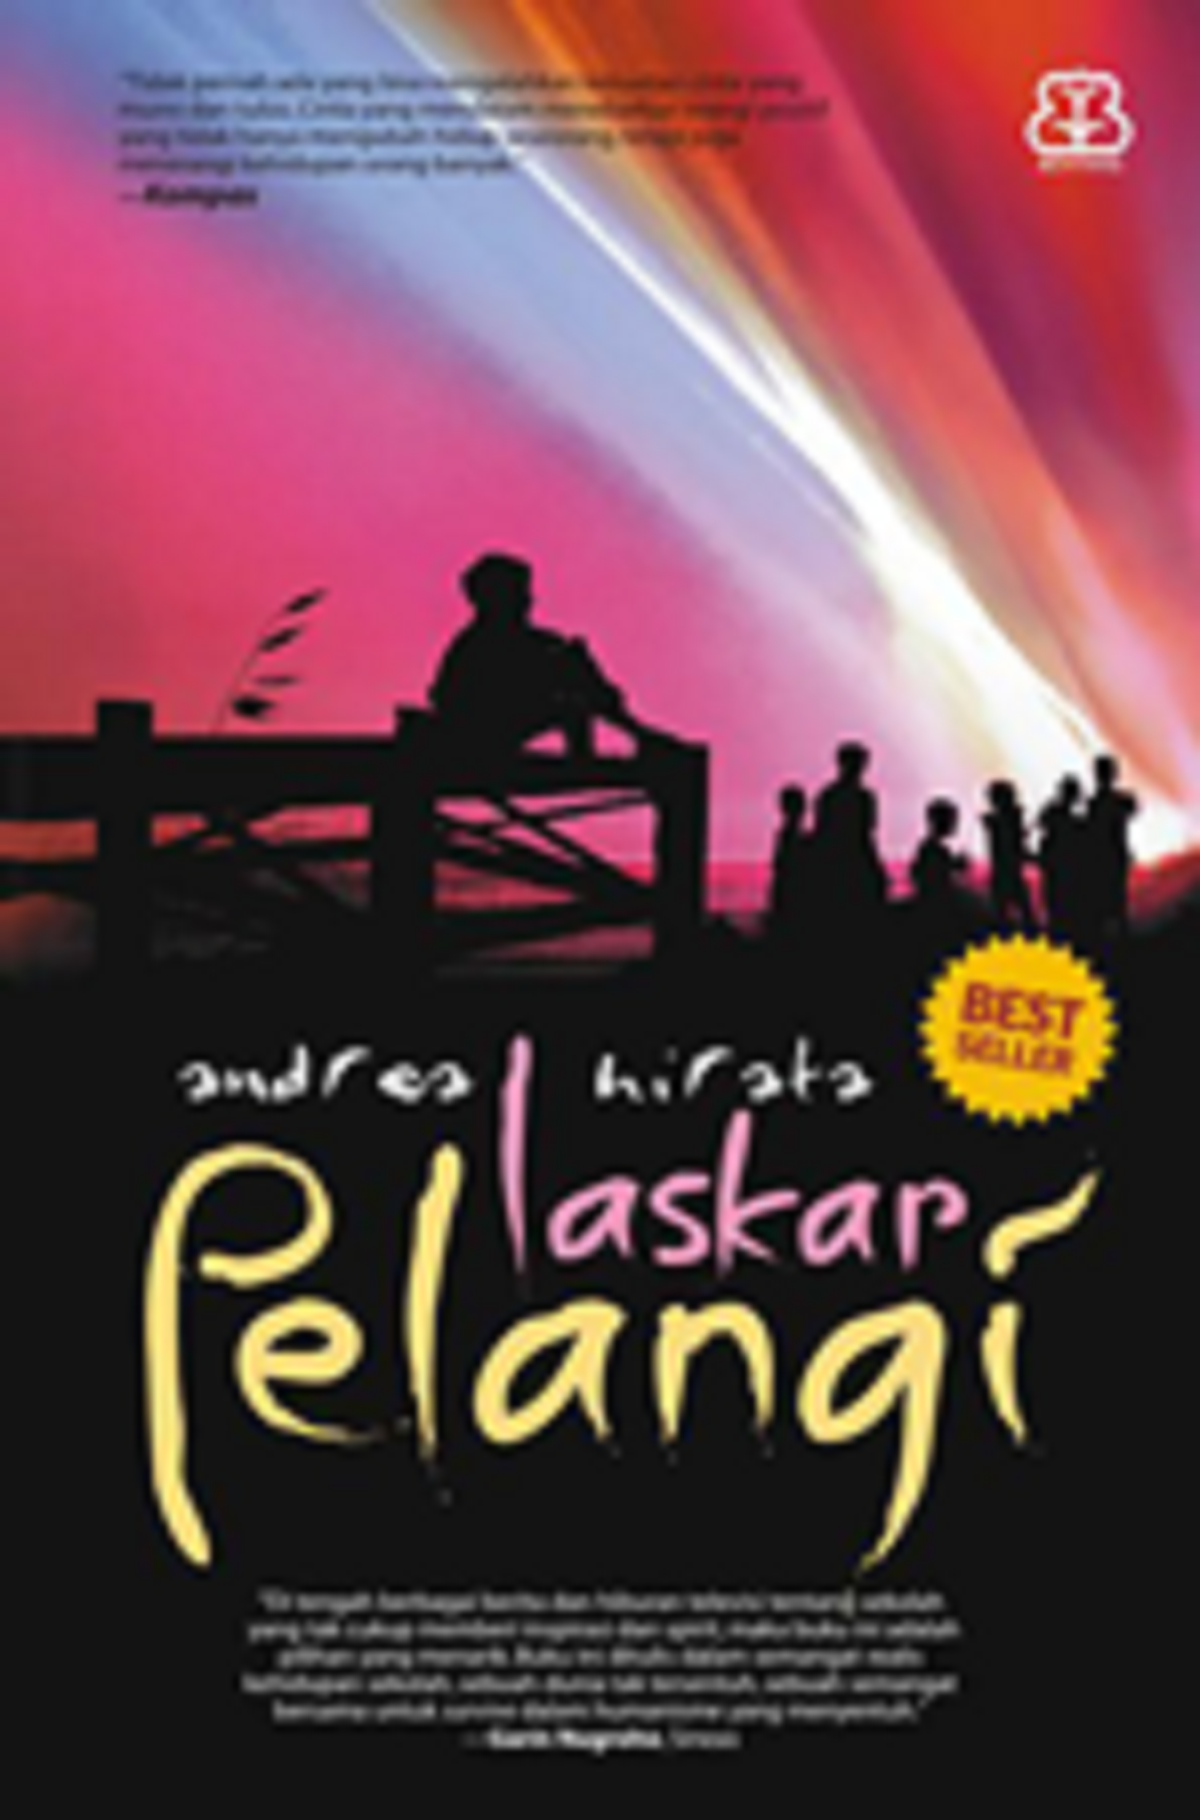 Laskar Pelangi 2005